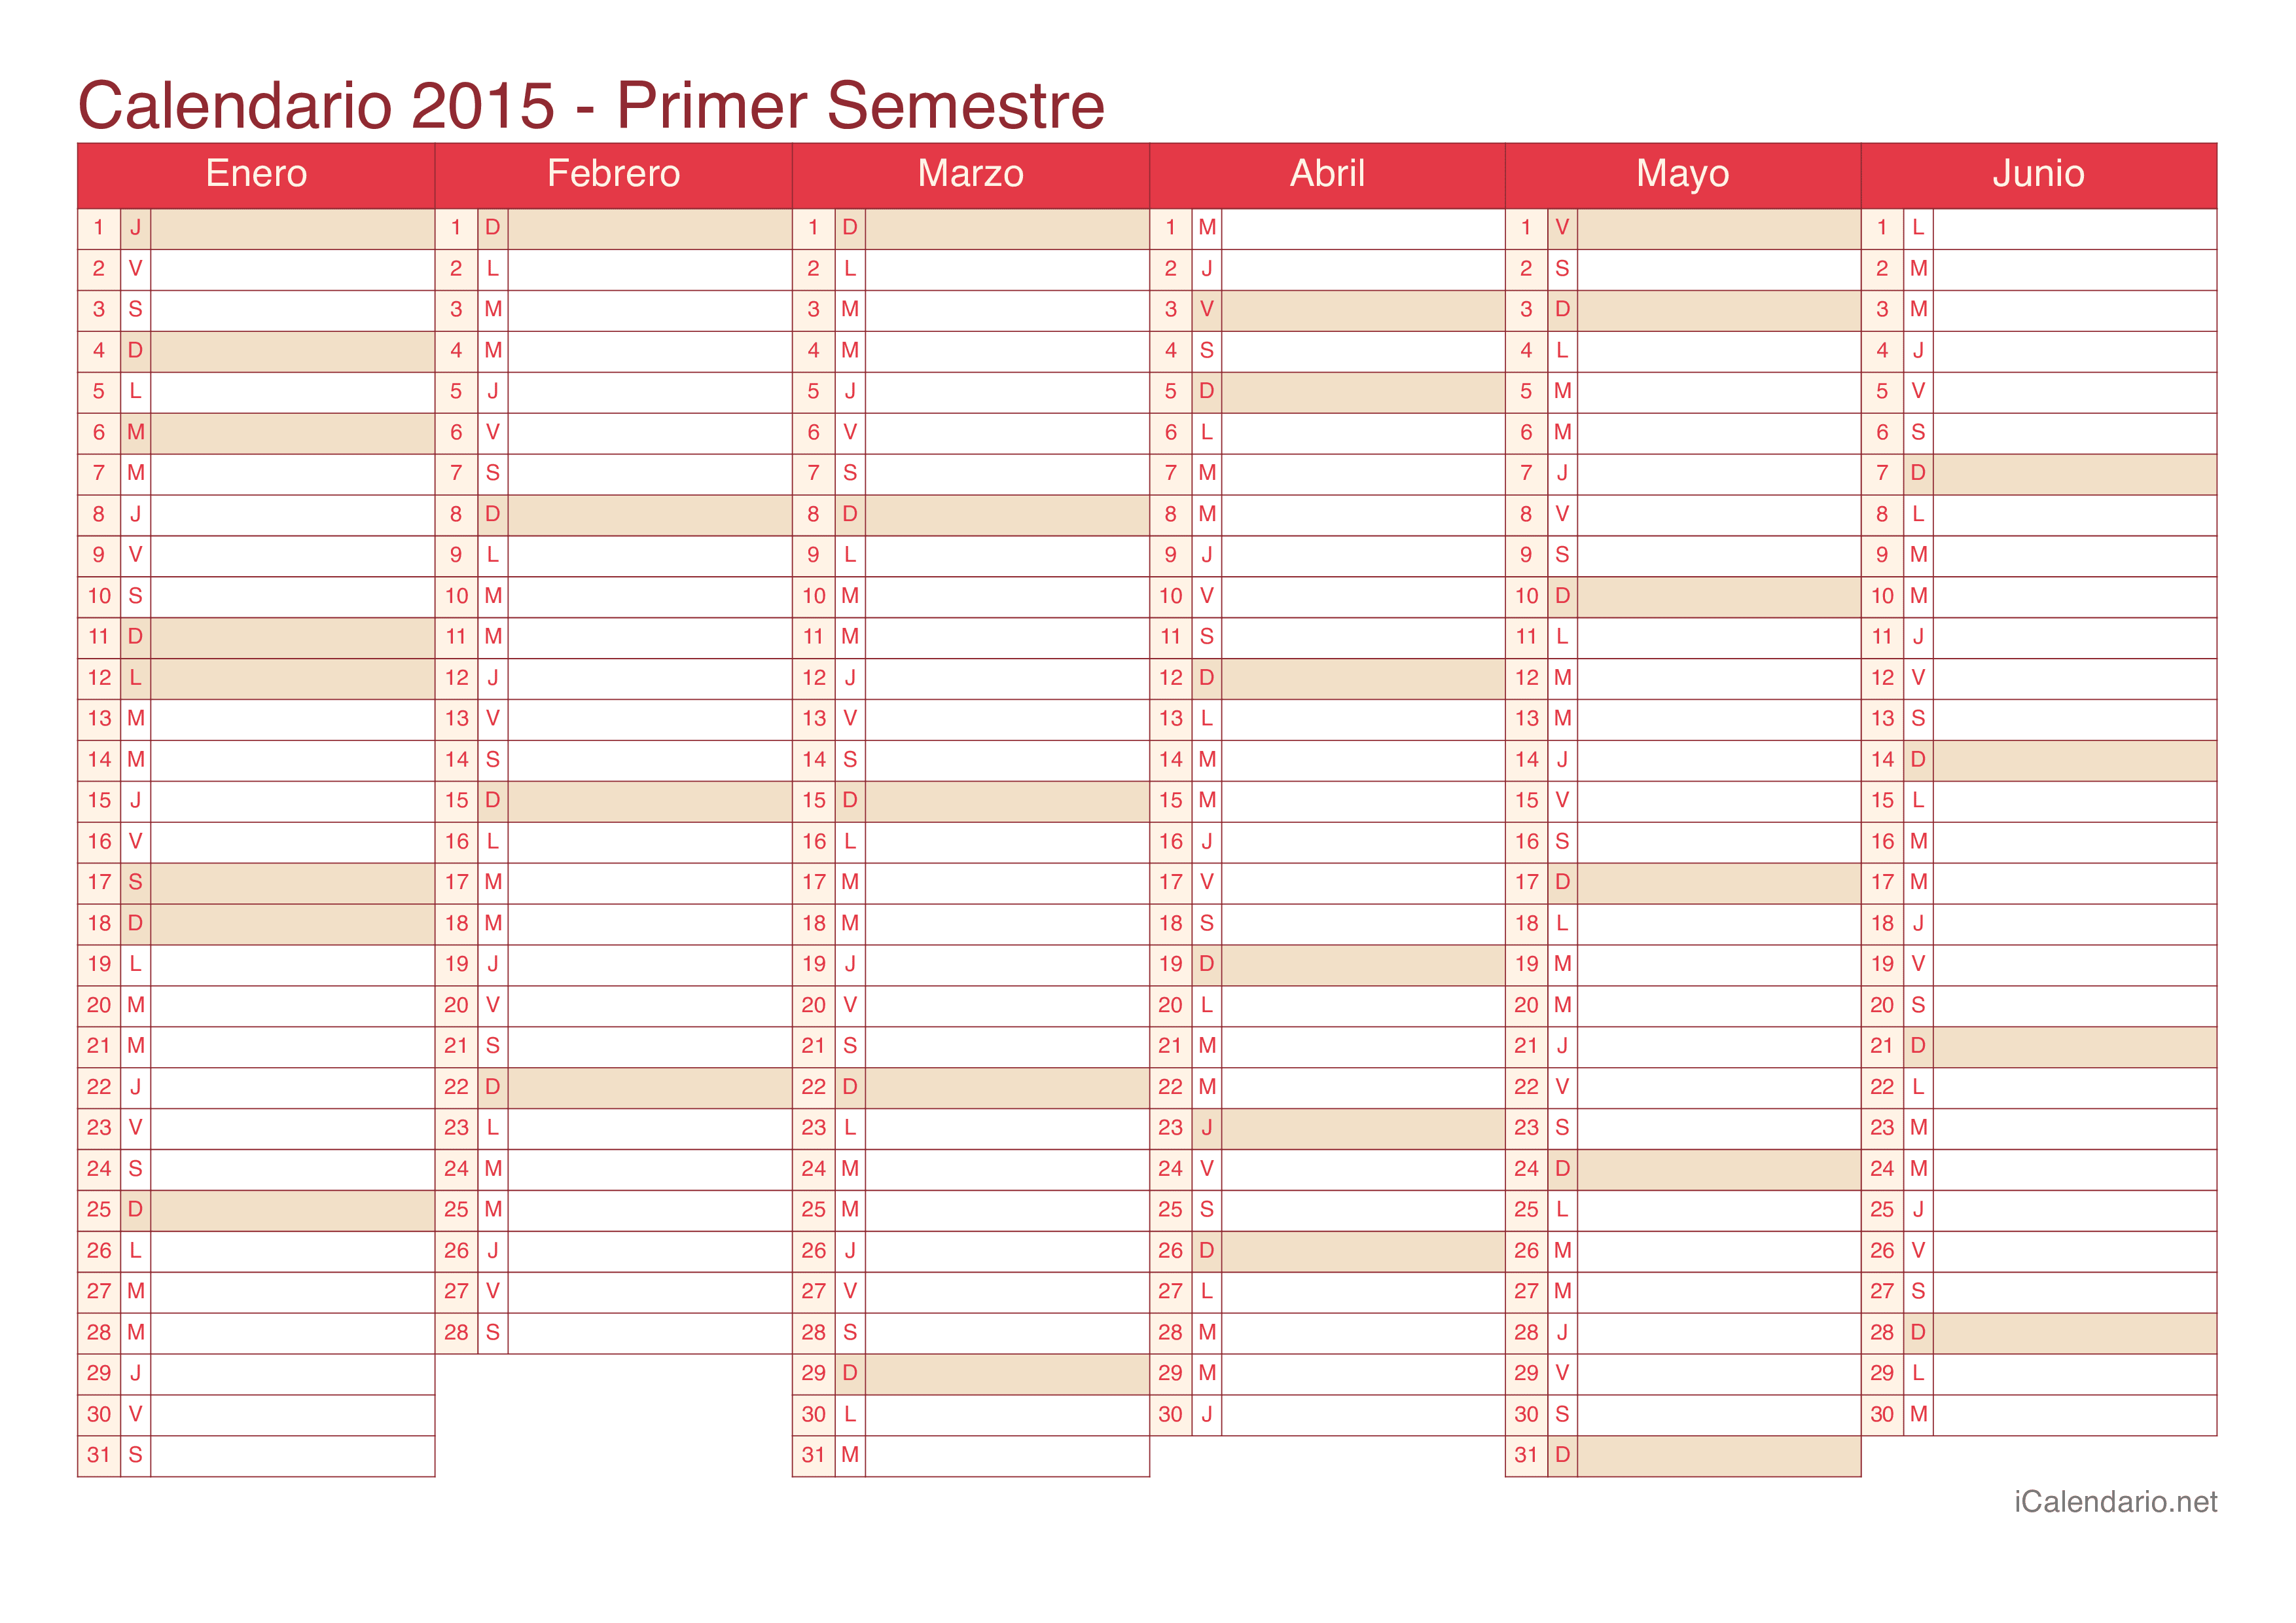 Calendario por semestre 2015 - Cherry